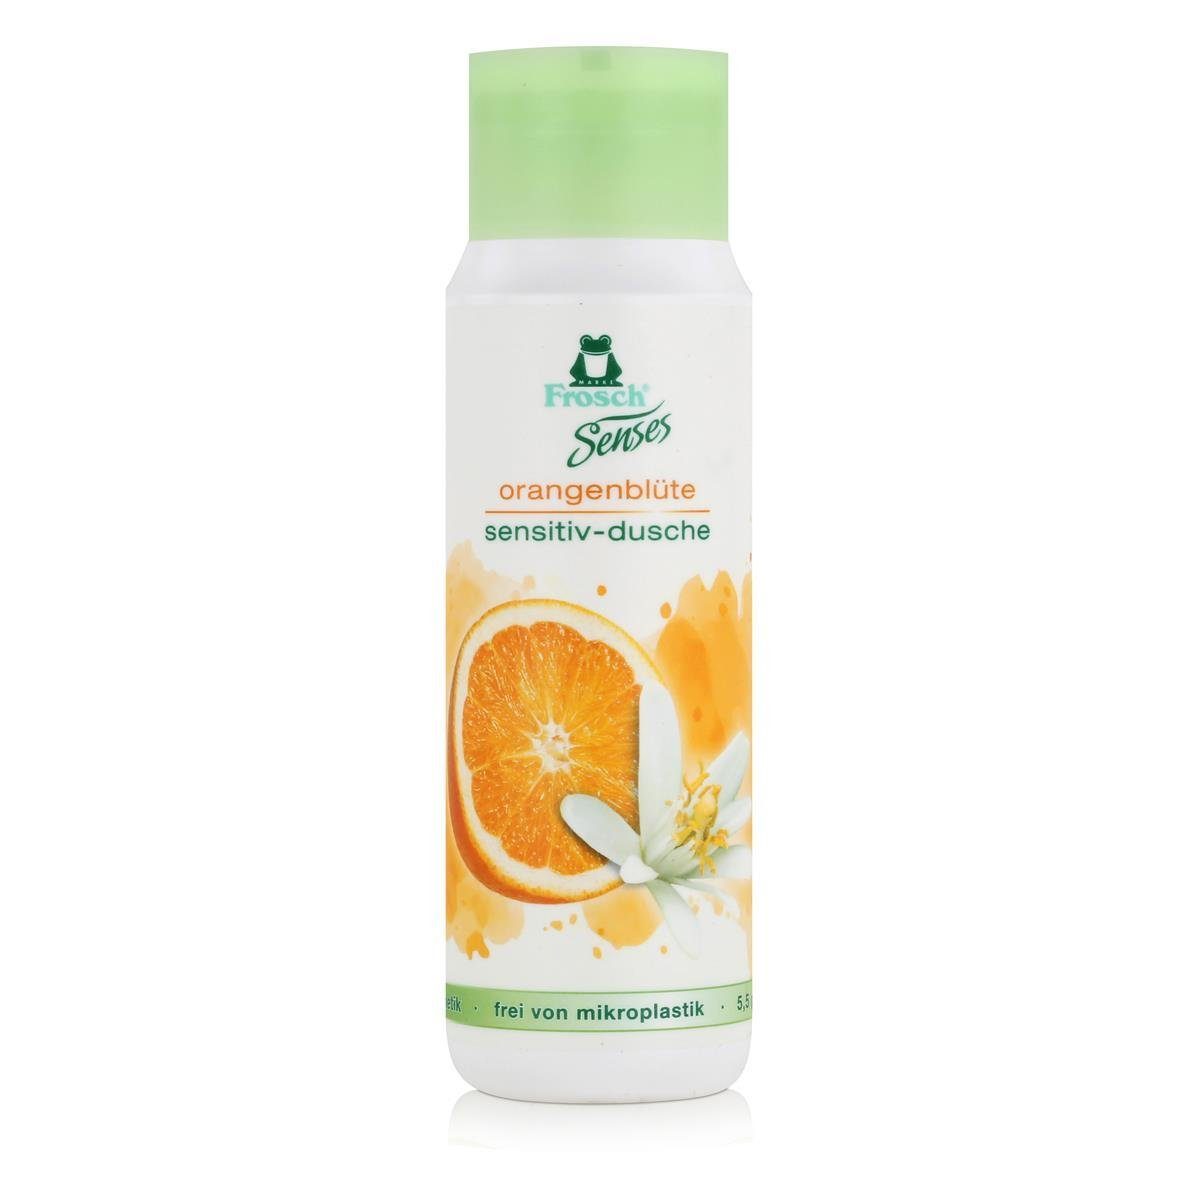 FROSCH Duschcreme Frosch Senses orangenblüte sensitiv-dusche 300ml - Duschgel (1er Pack)